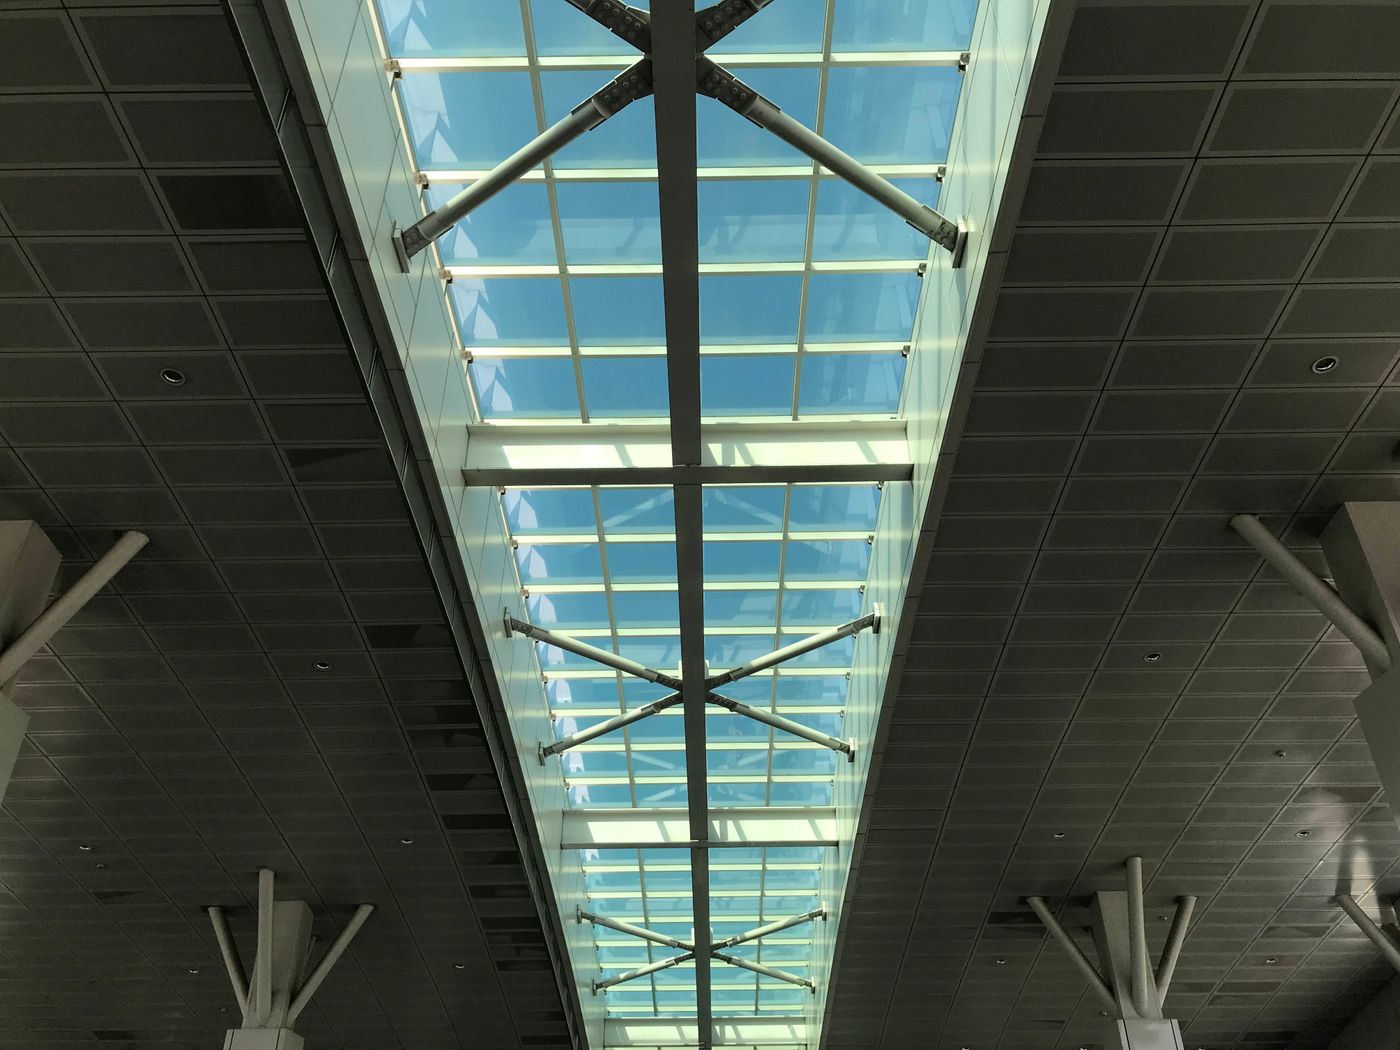 捷運站天花板